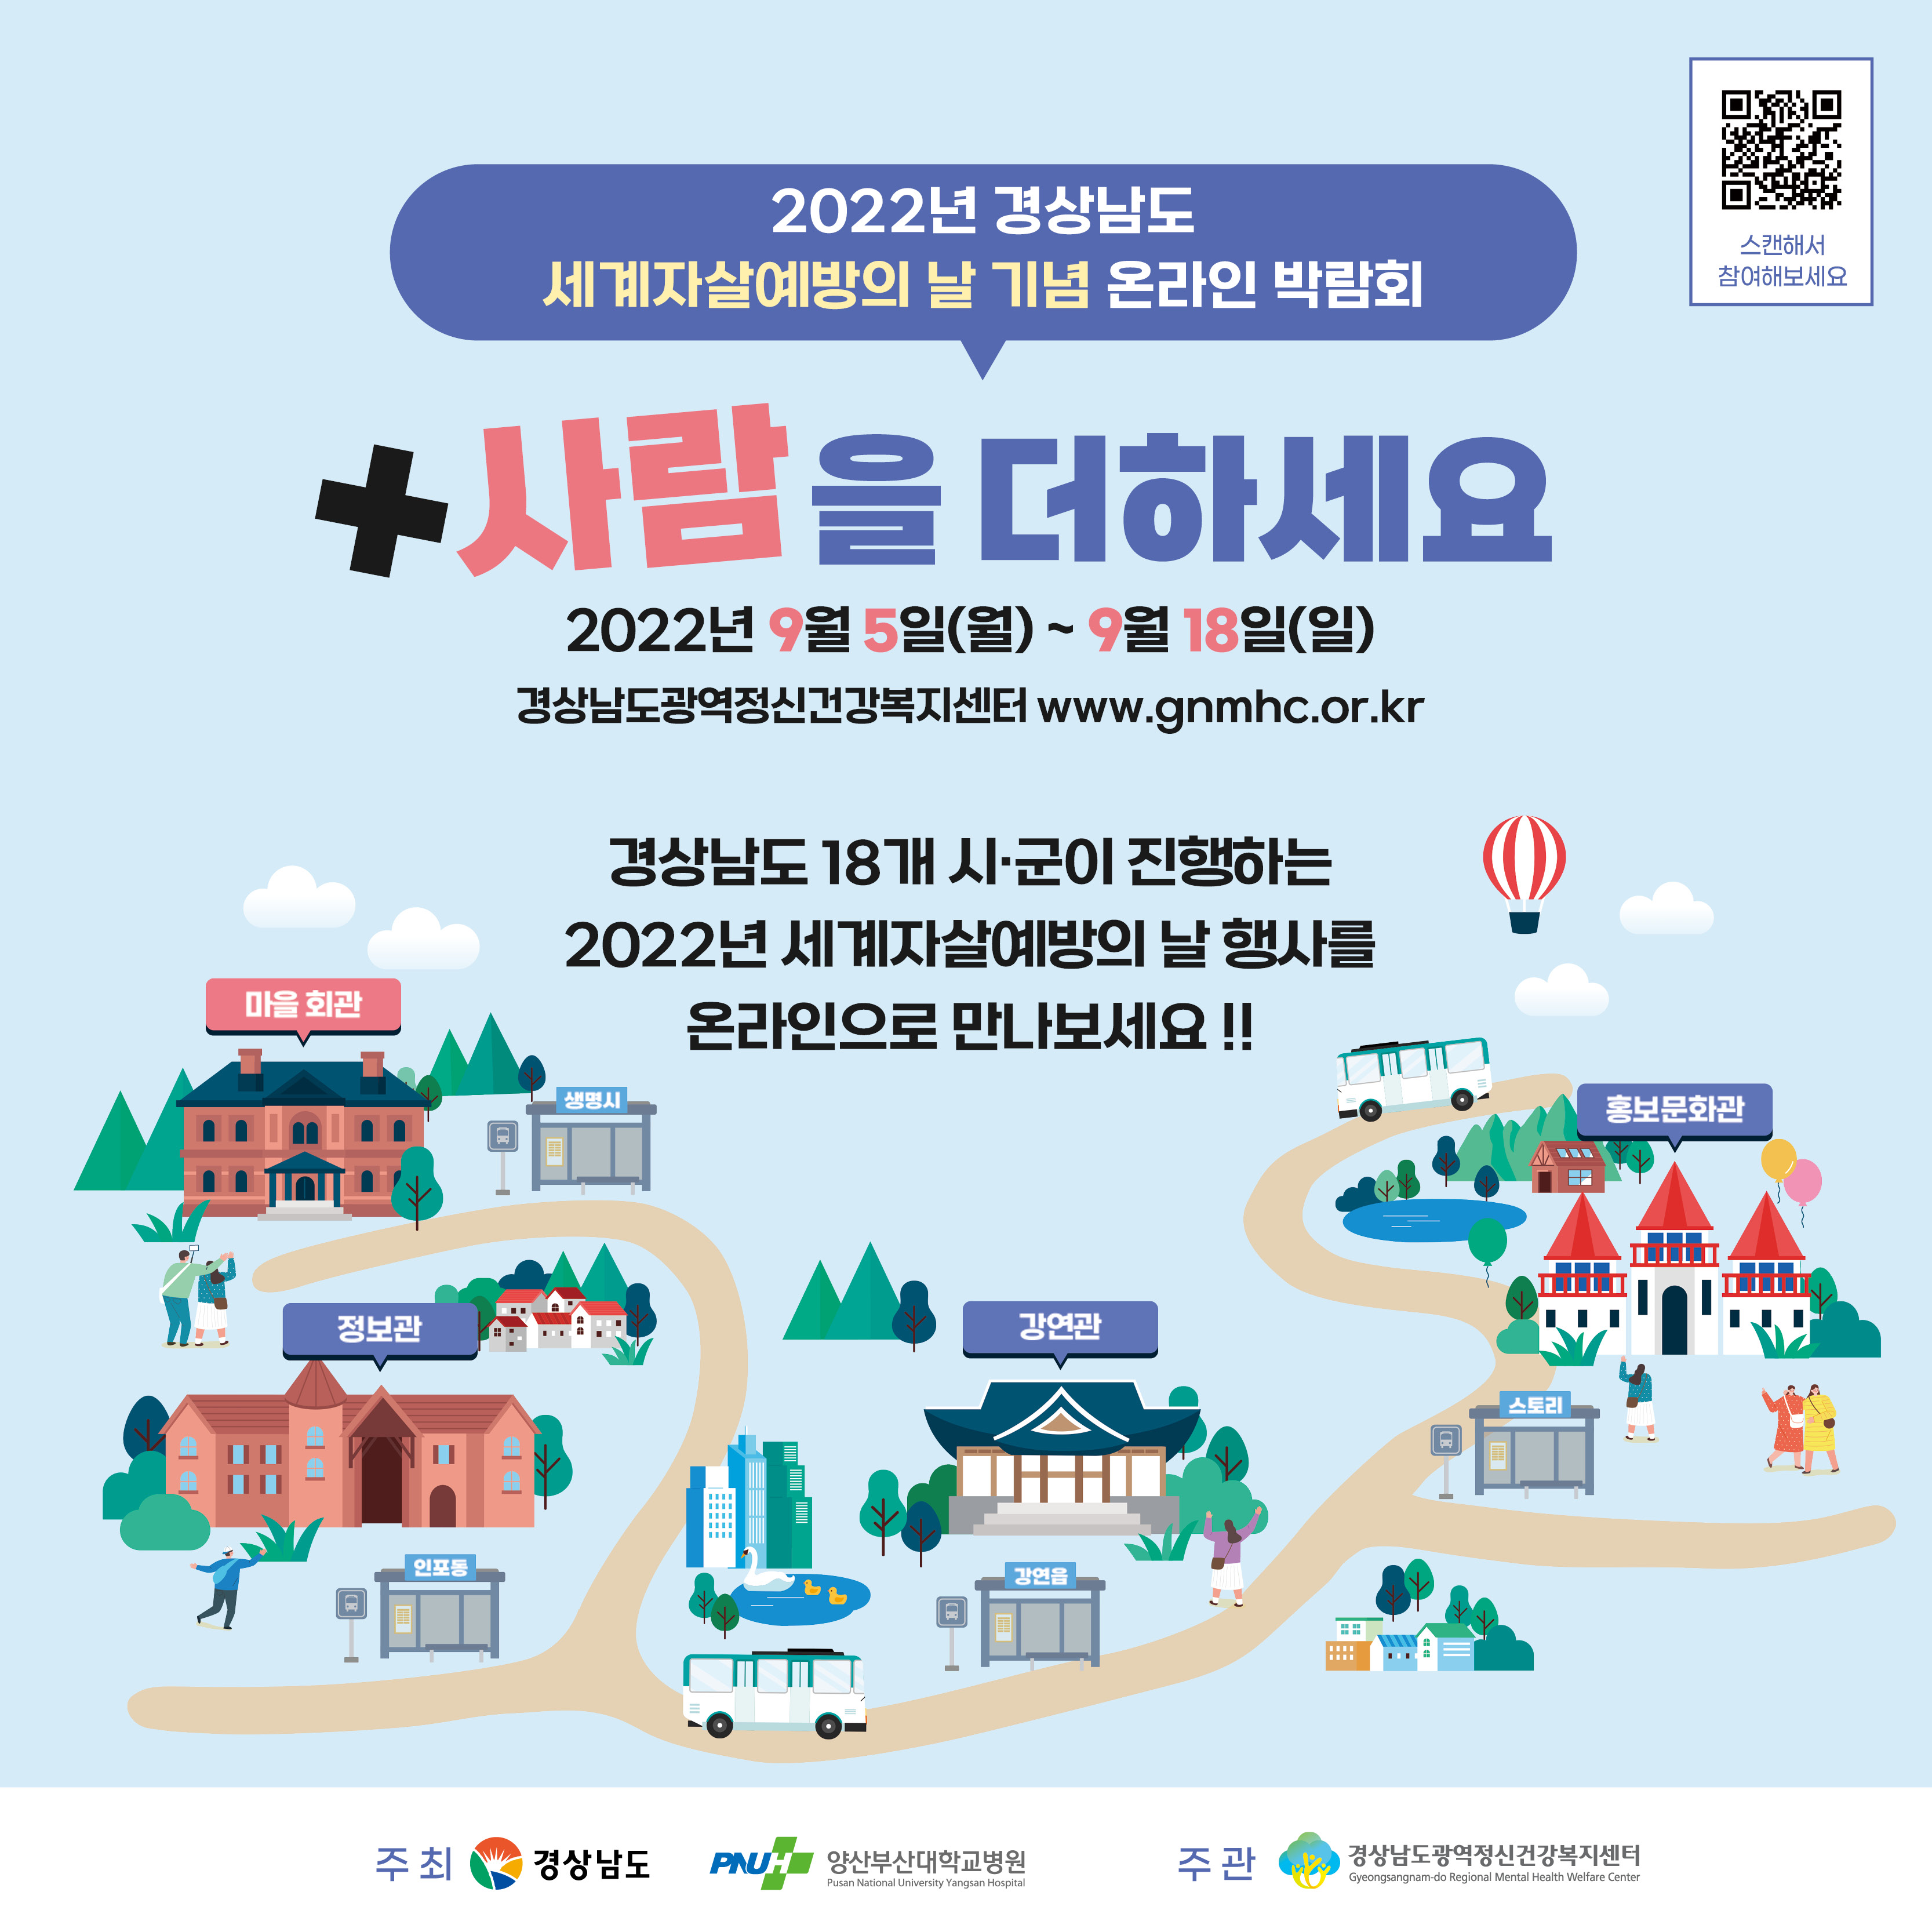 2022년 세계자살예방의날 기념 경상남도 온라인 박람회 개최 안내 2